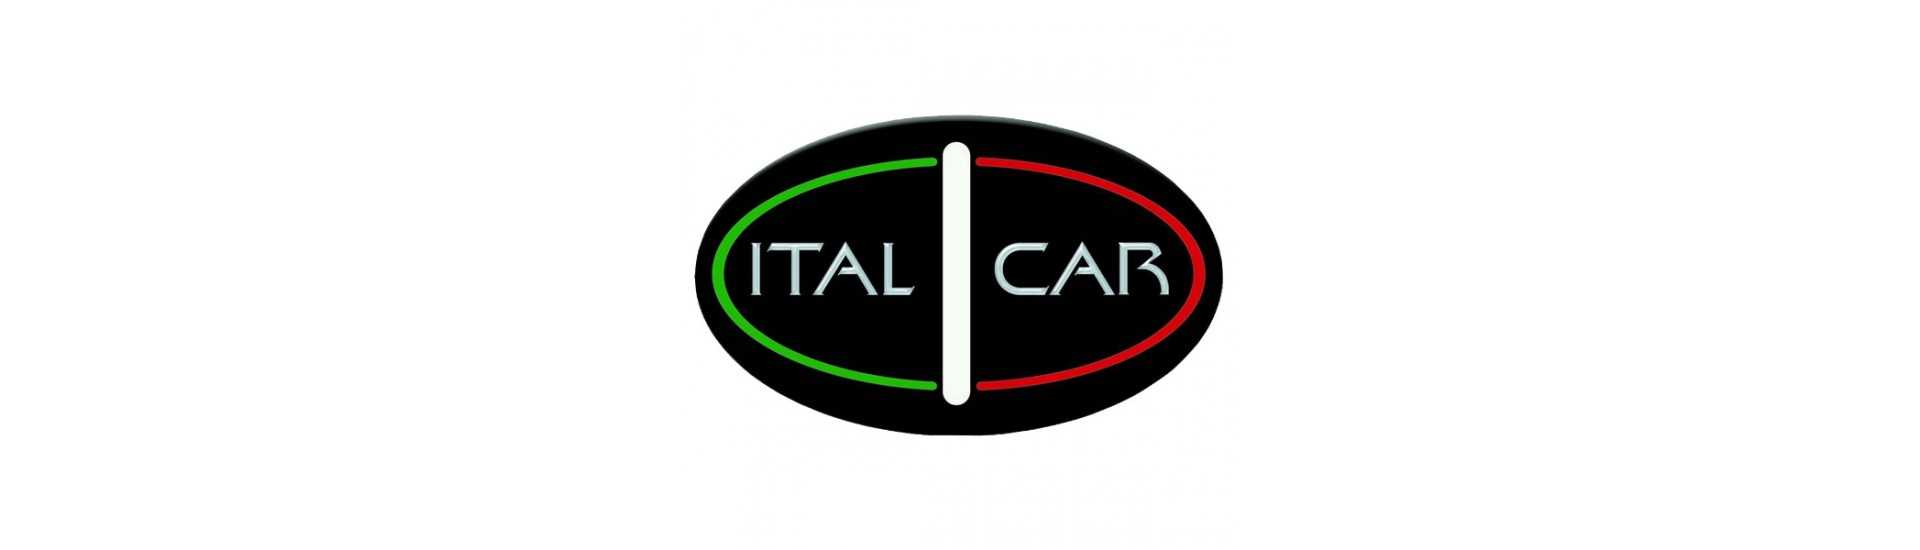 Carrosserie au meilleur prix pour voiture sans permis Italcar